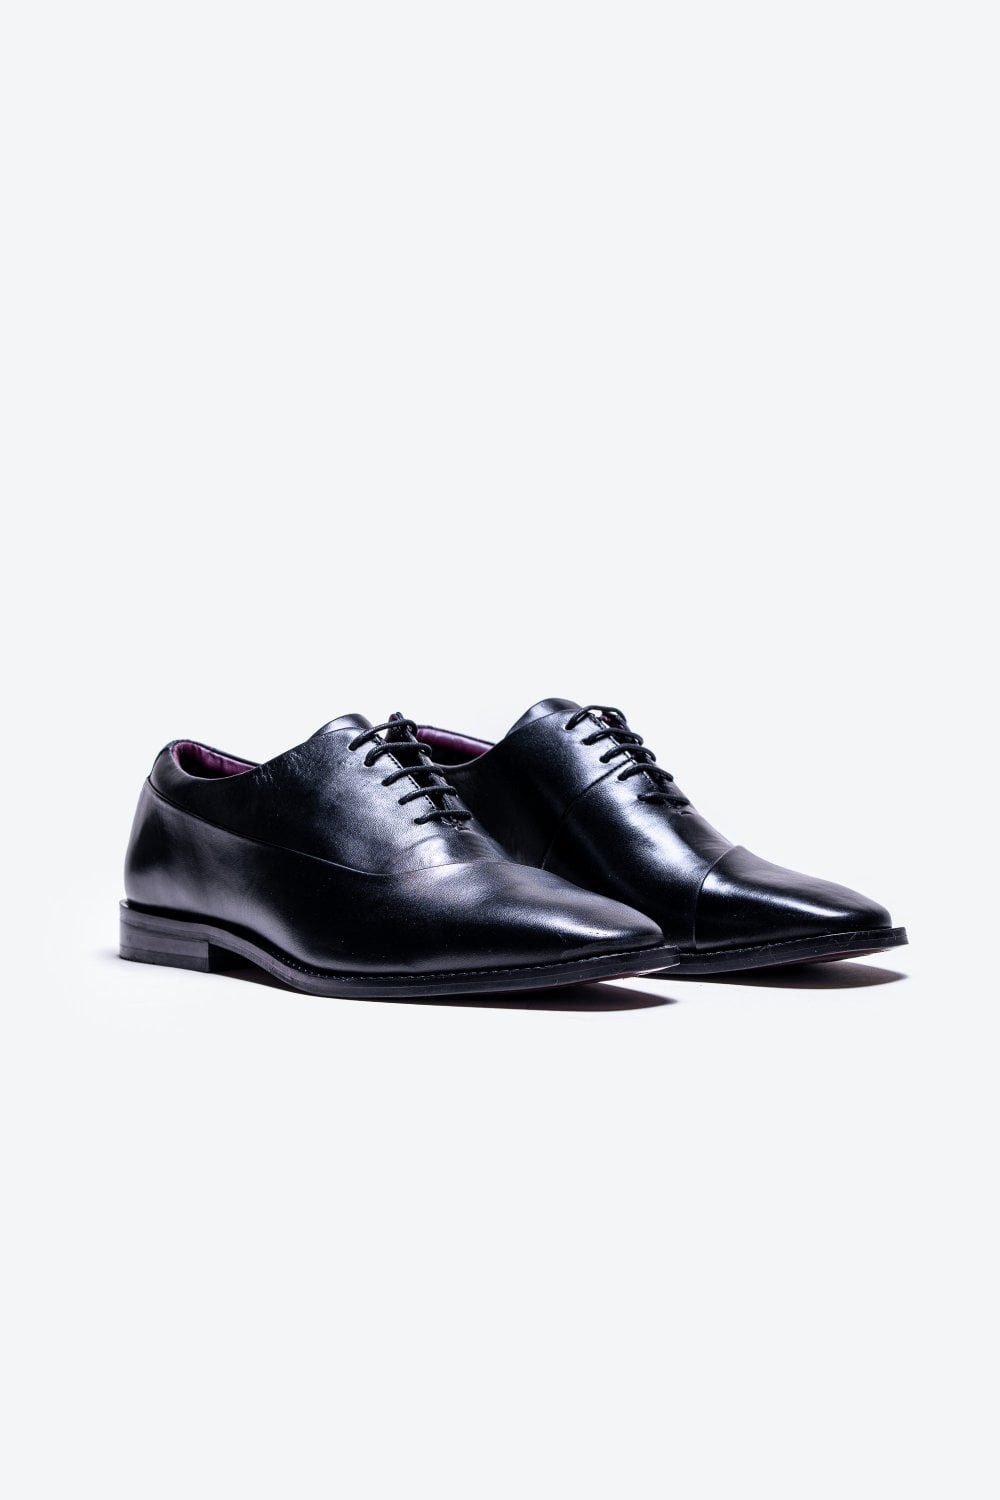 Chaussures Oxford en cuir véritable pour hommes - SEVILLE - Noir